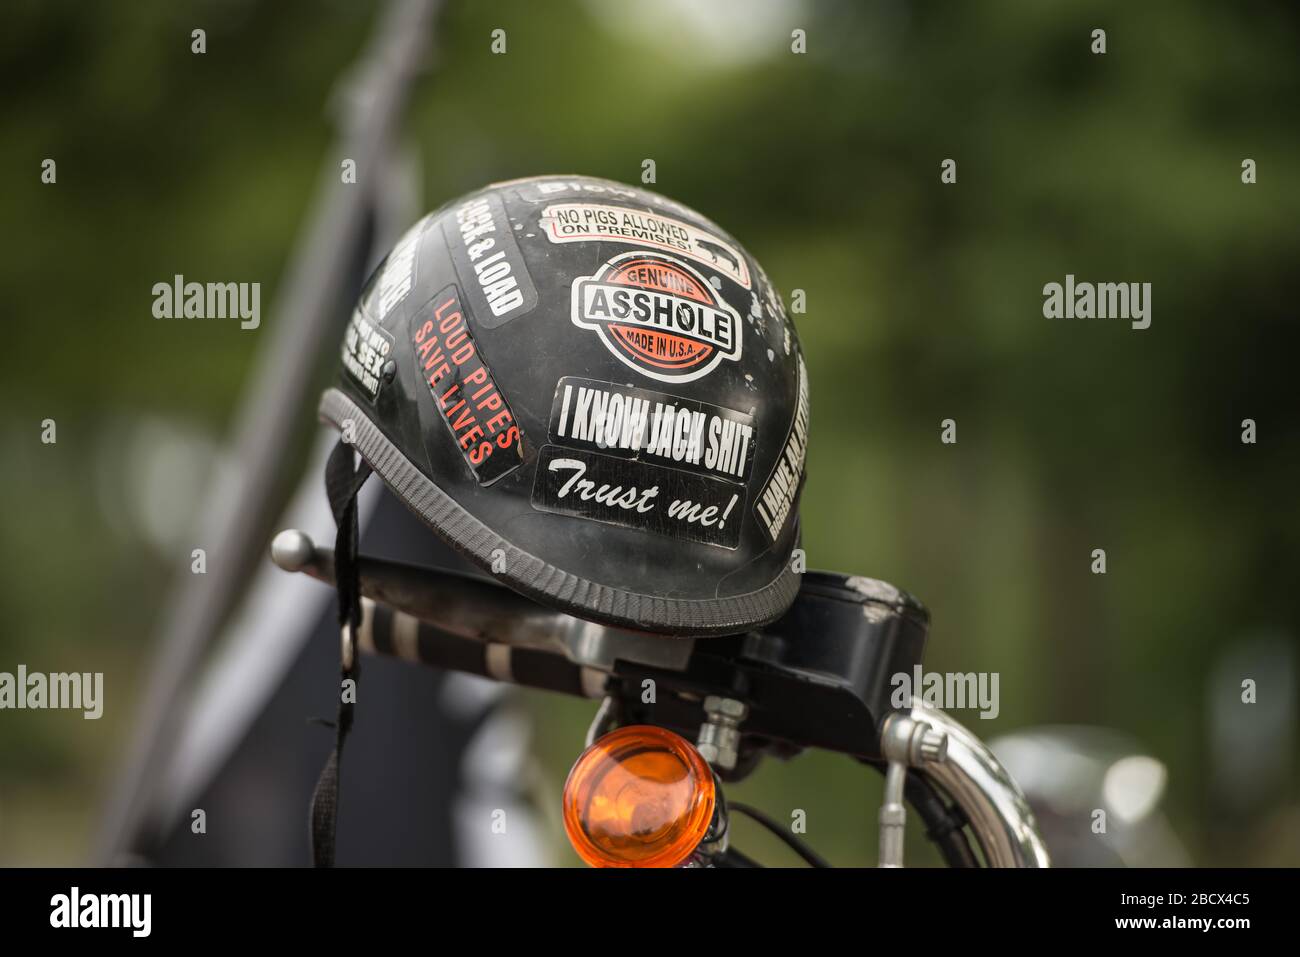 Casque de moto recouvert d'emblèmes, accroché sur une moto lors d'un rallye Rolling Thunder. Banque D'Images